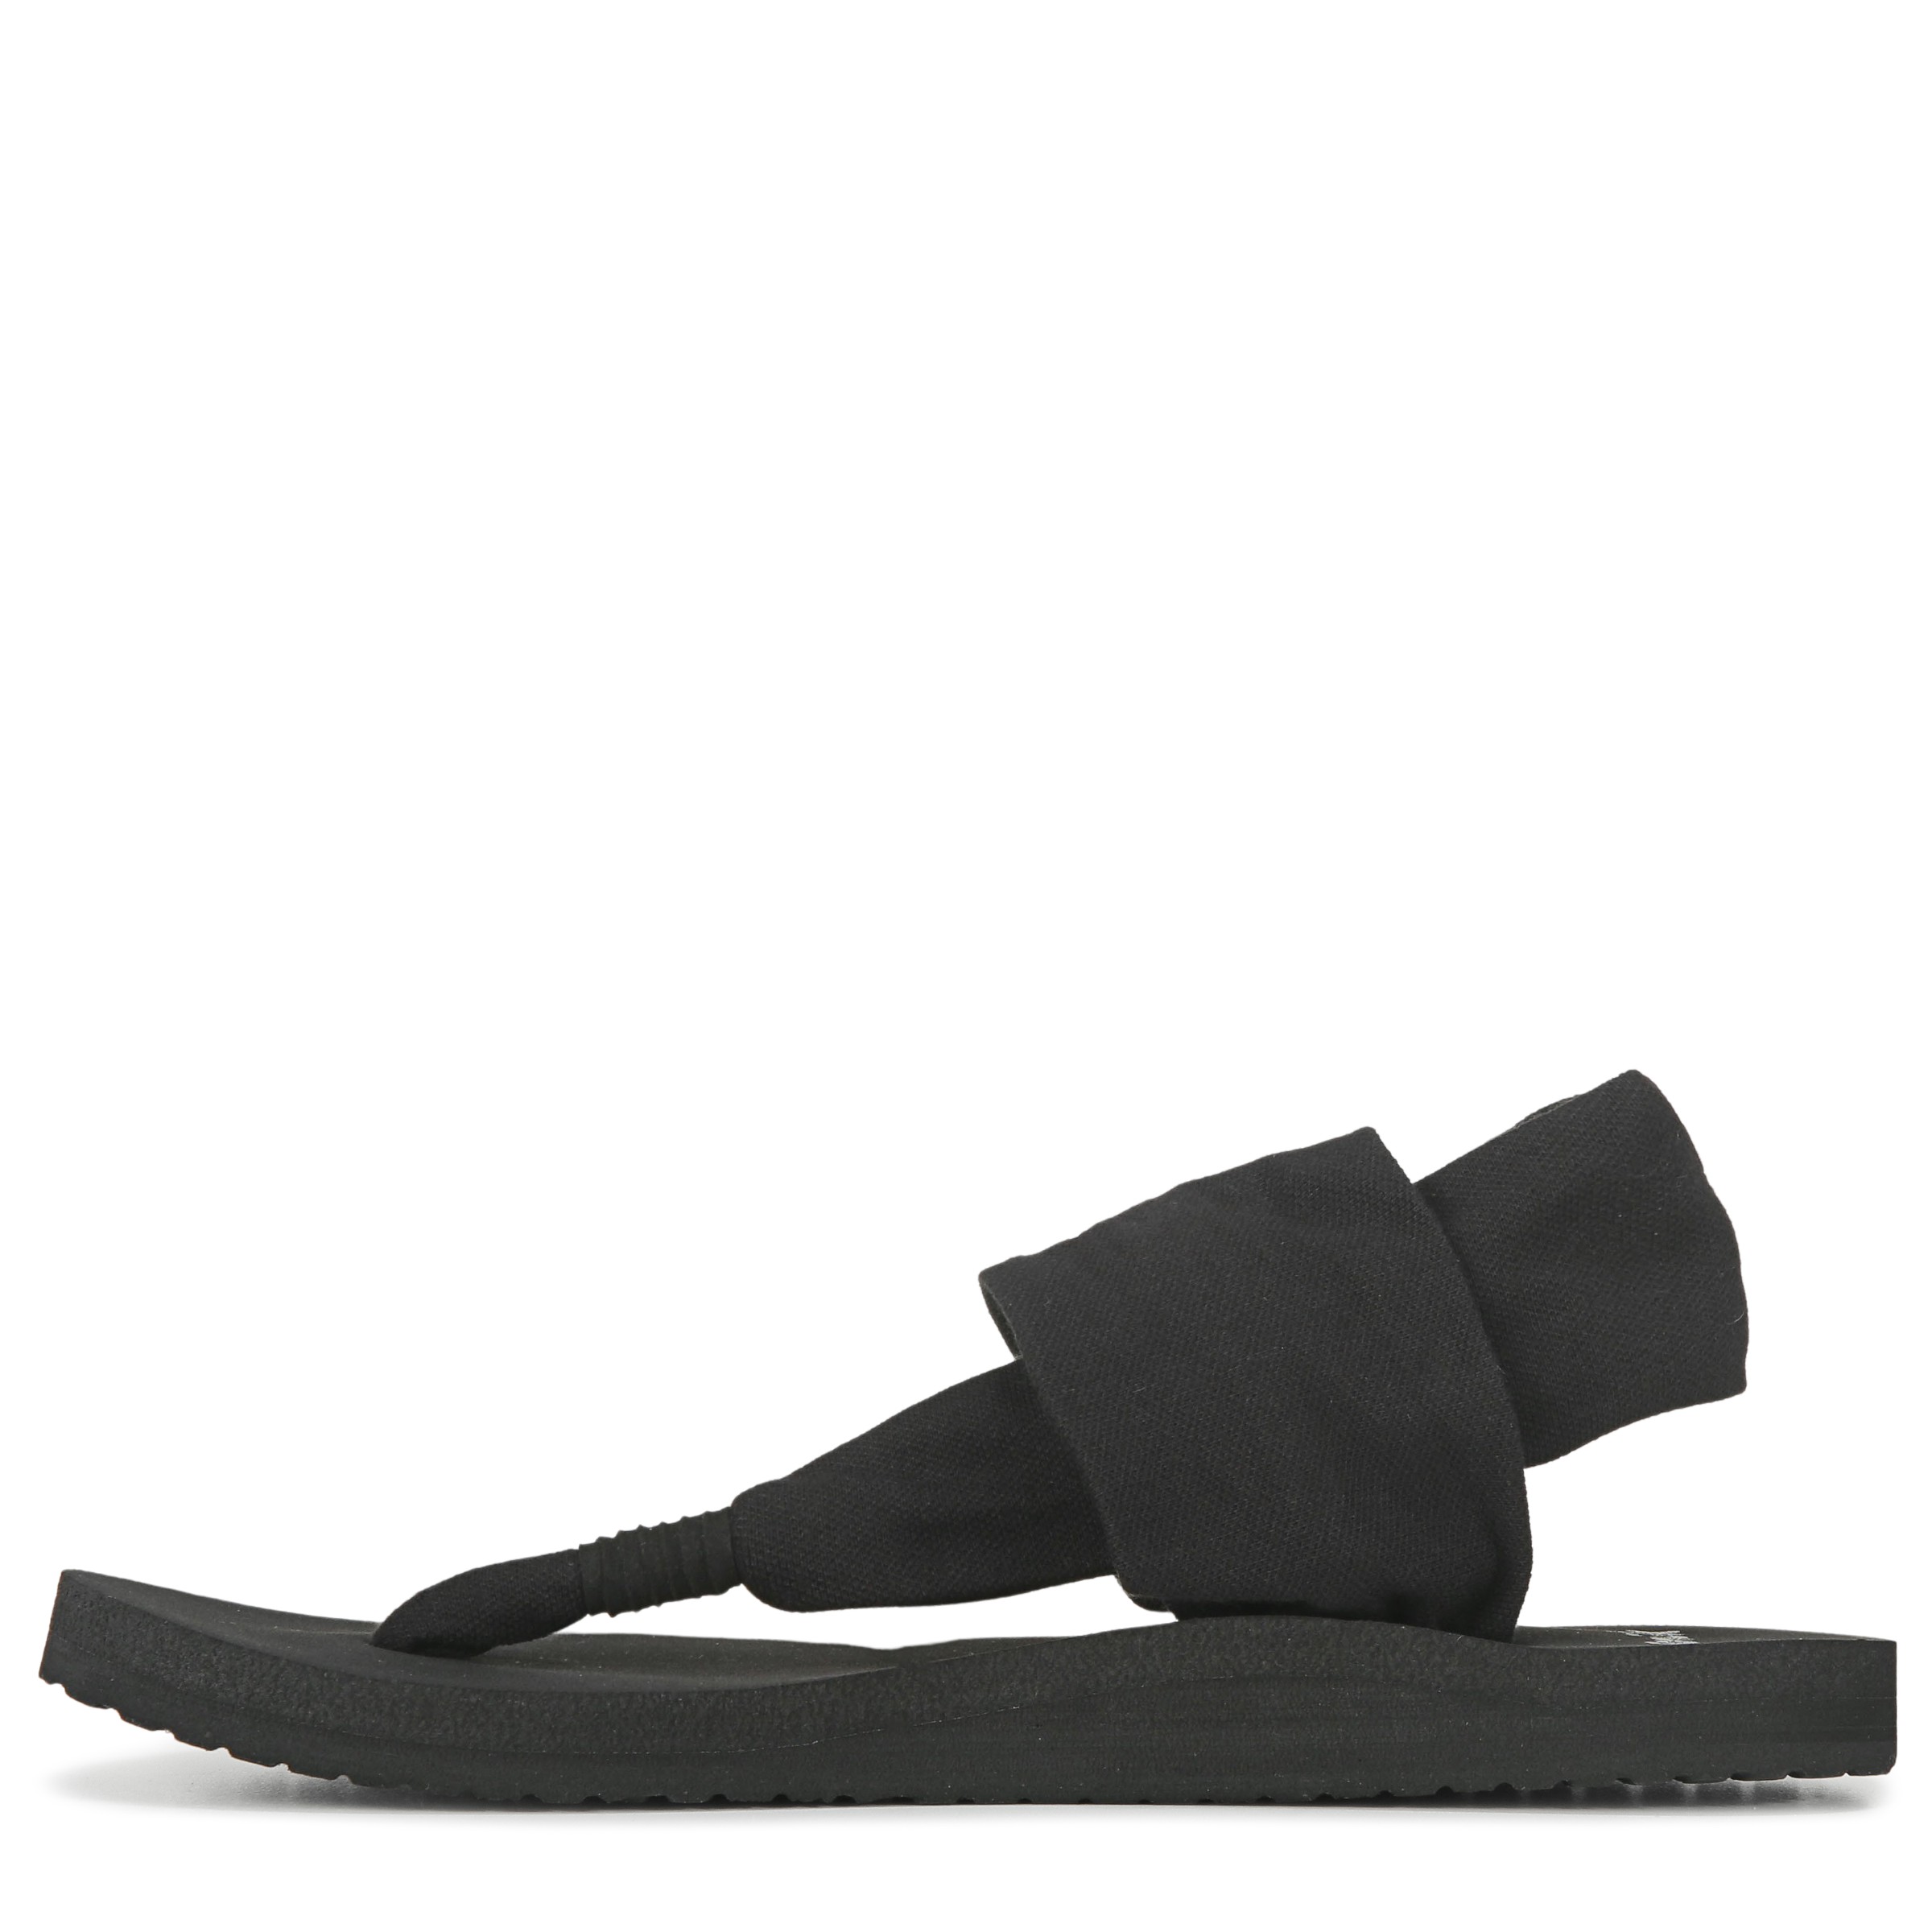 Sanuk Yoga Sling Flat Sandals Black Size 8  Black sandals, Sanuk yoga  sling, Slingback sandal